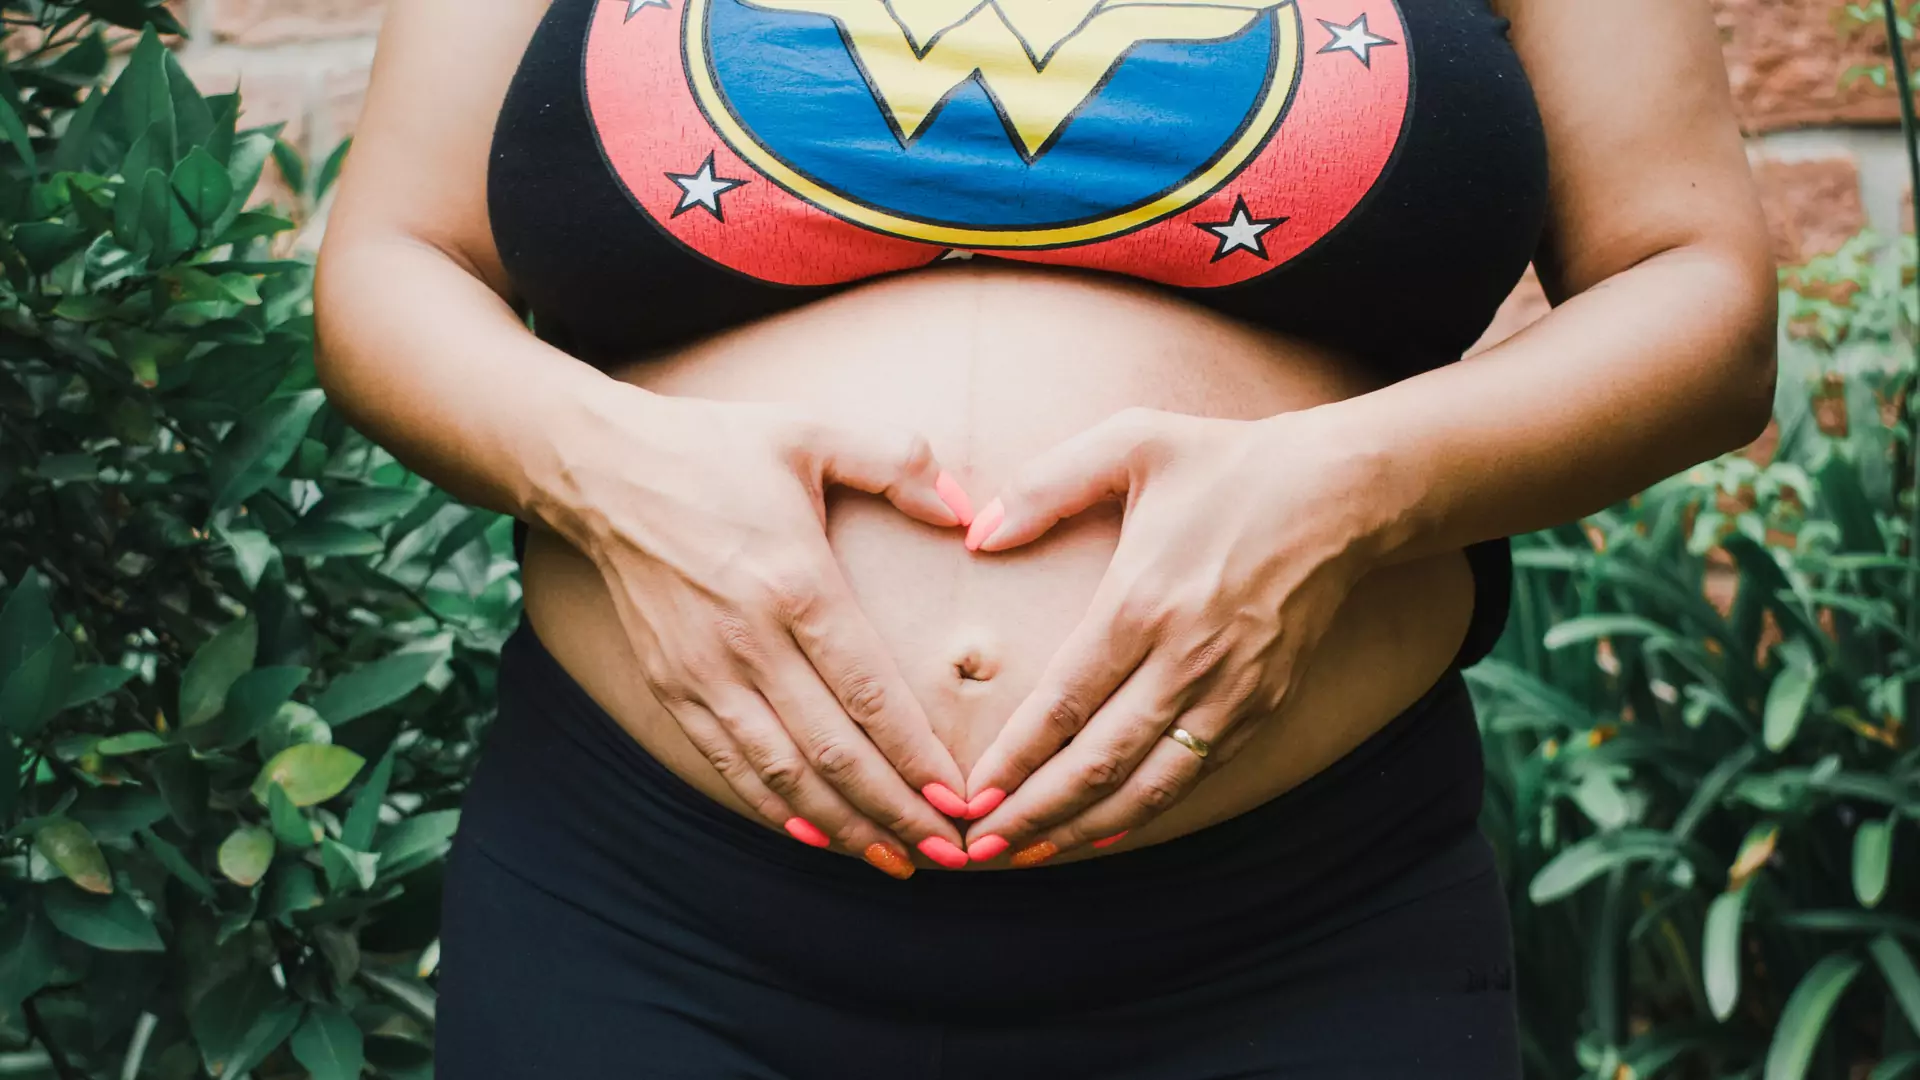 Ciąża i poród naznaczają ciało, ale kobiety nie zawsze chcą o tym mówić